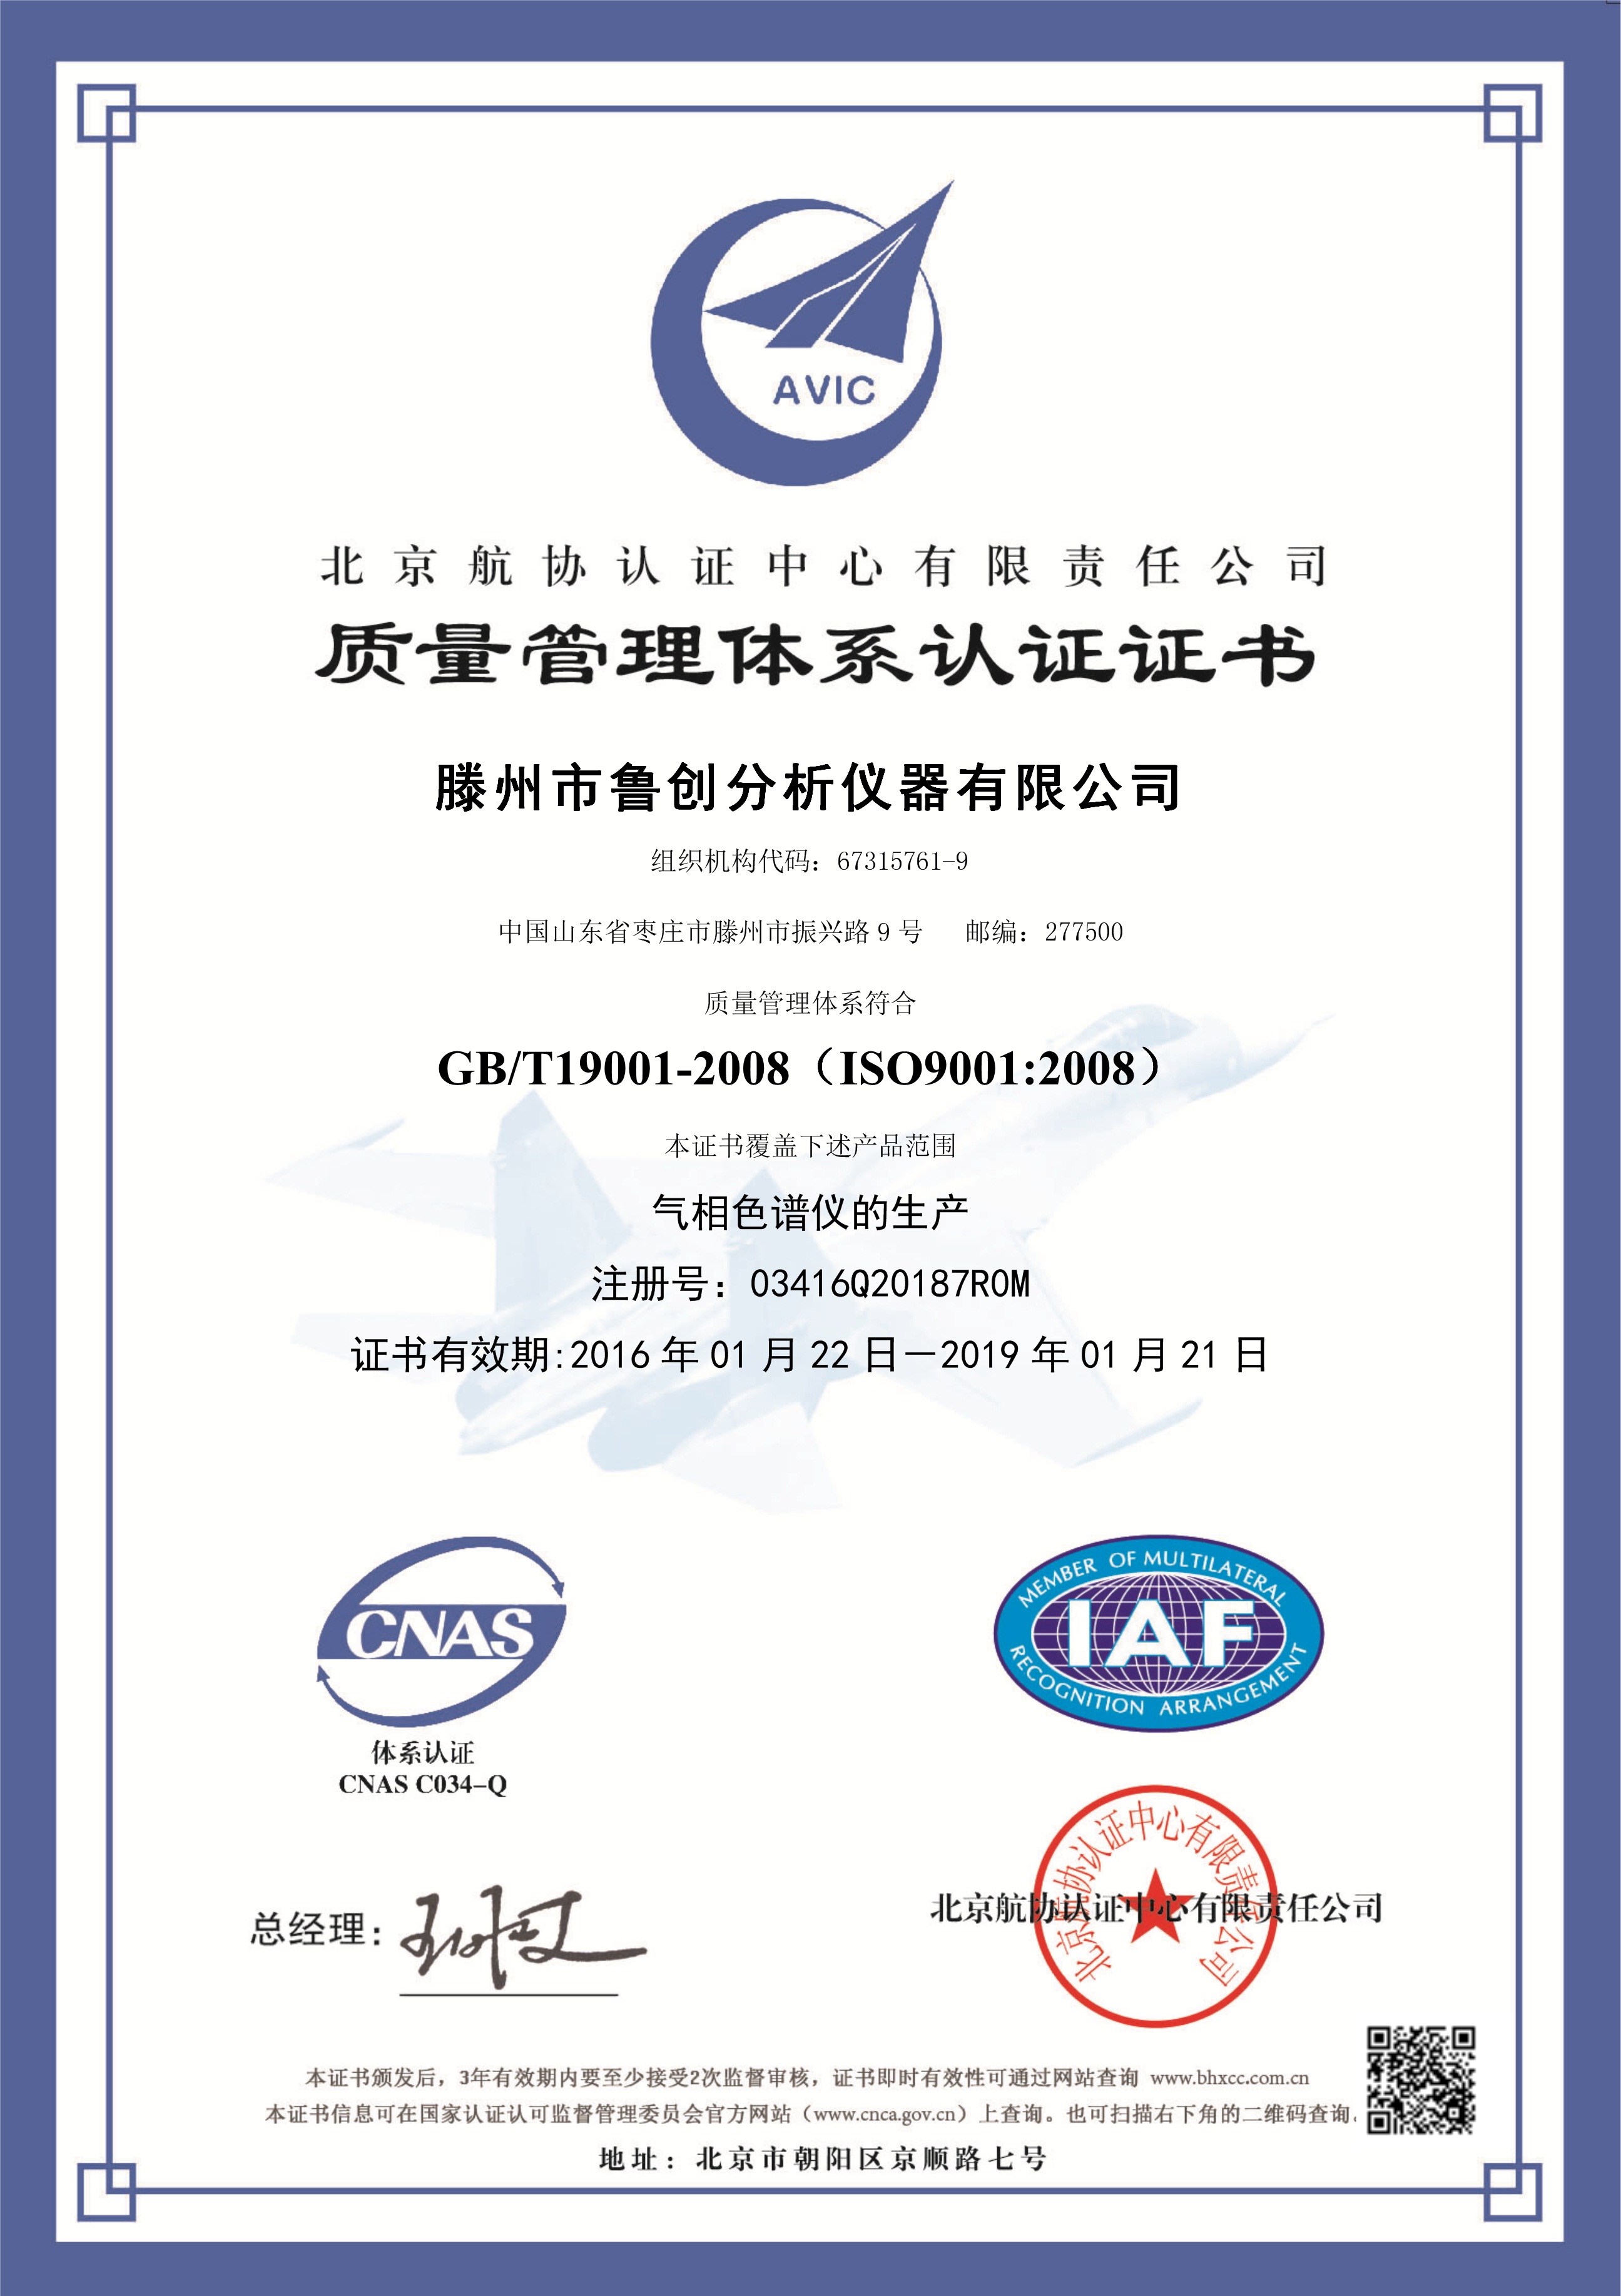 鲁创公司顺利通过ISO9001:2008质量管理体系